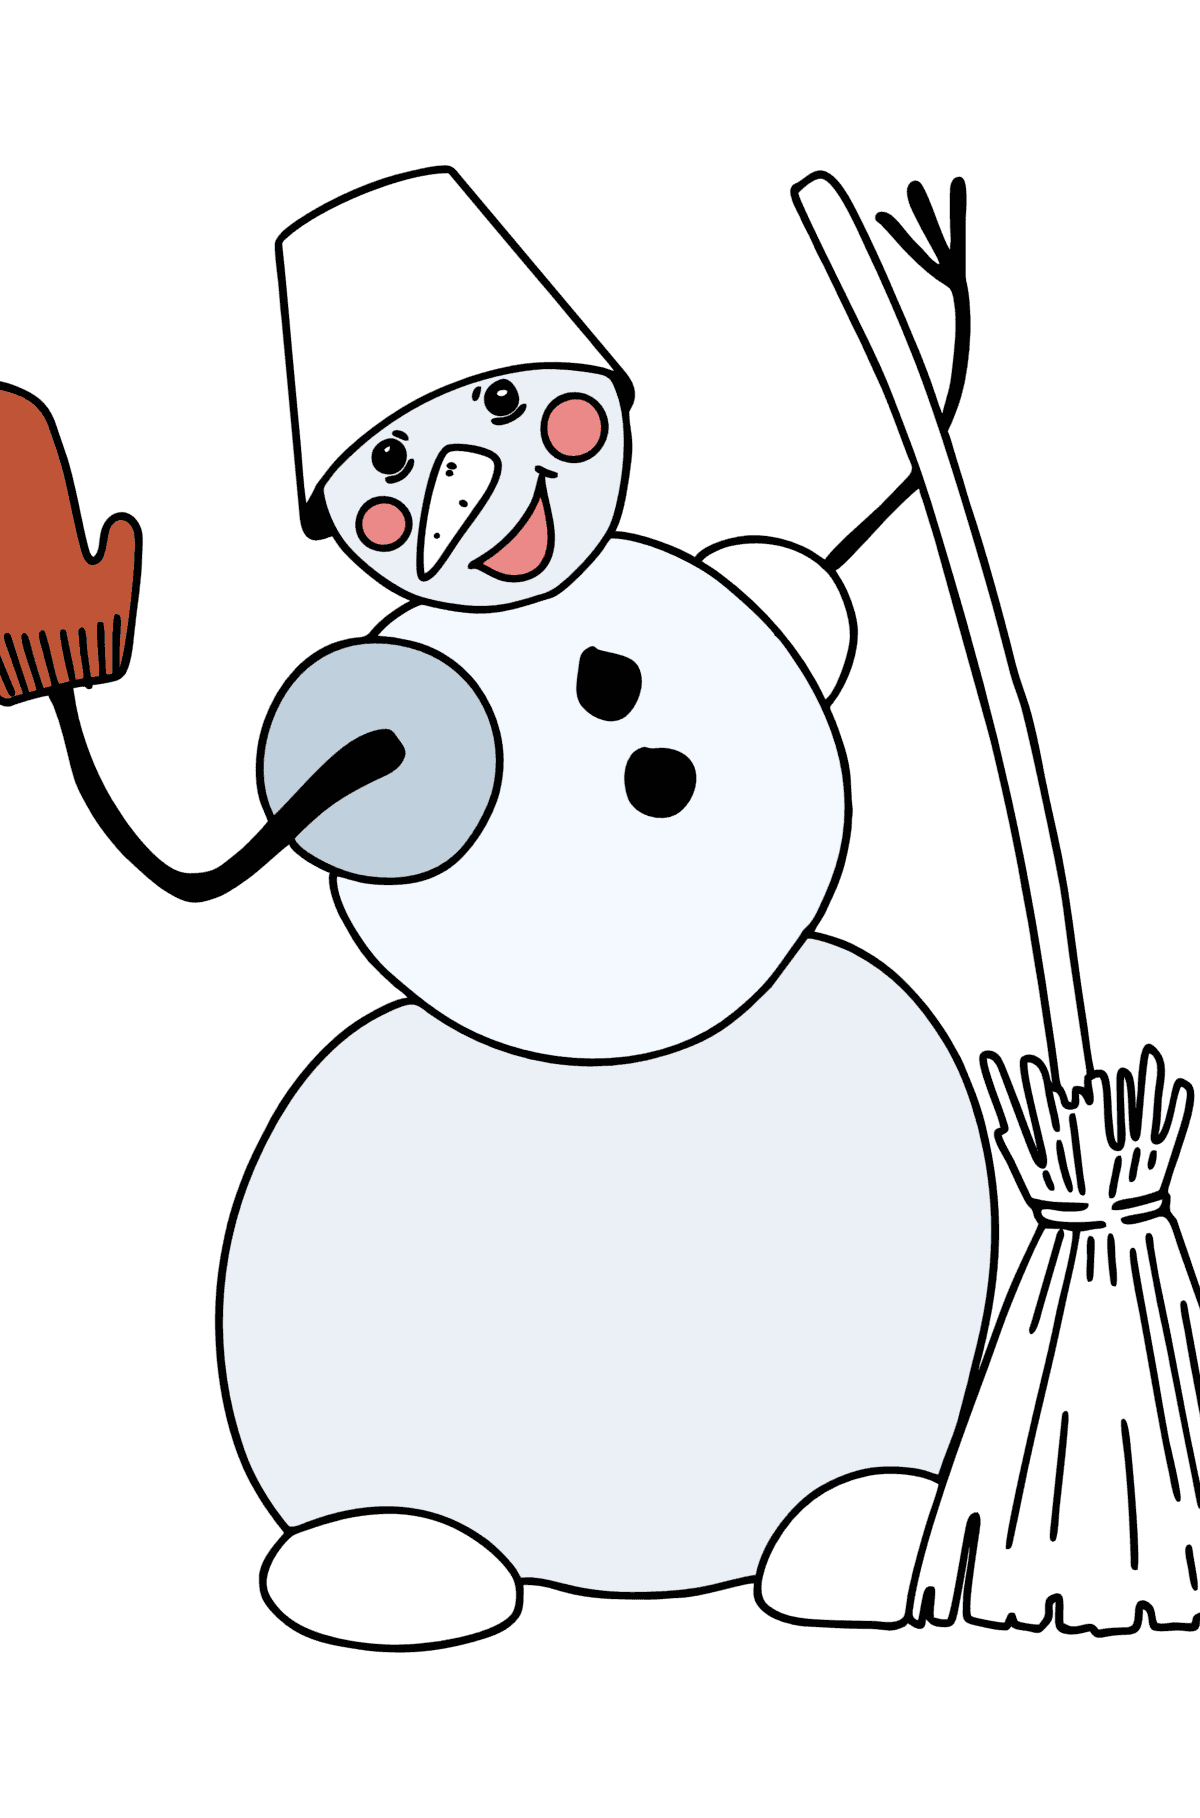 Kleurplaat sneeuwpop met bezem - kleurplaten voor kinderen